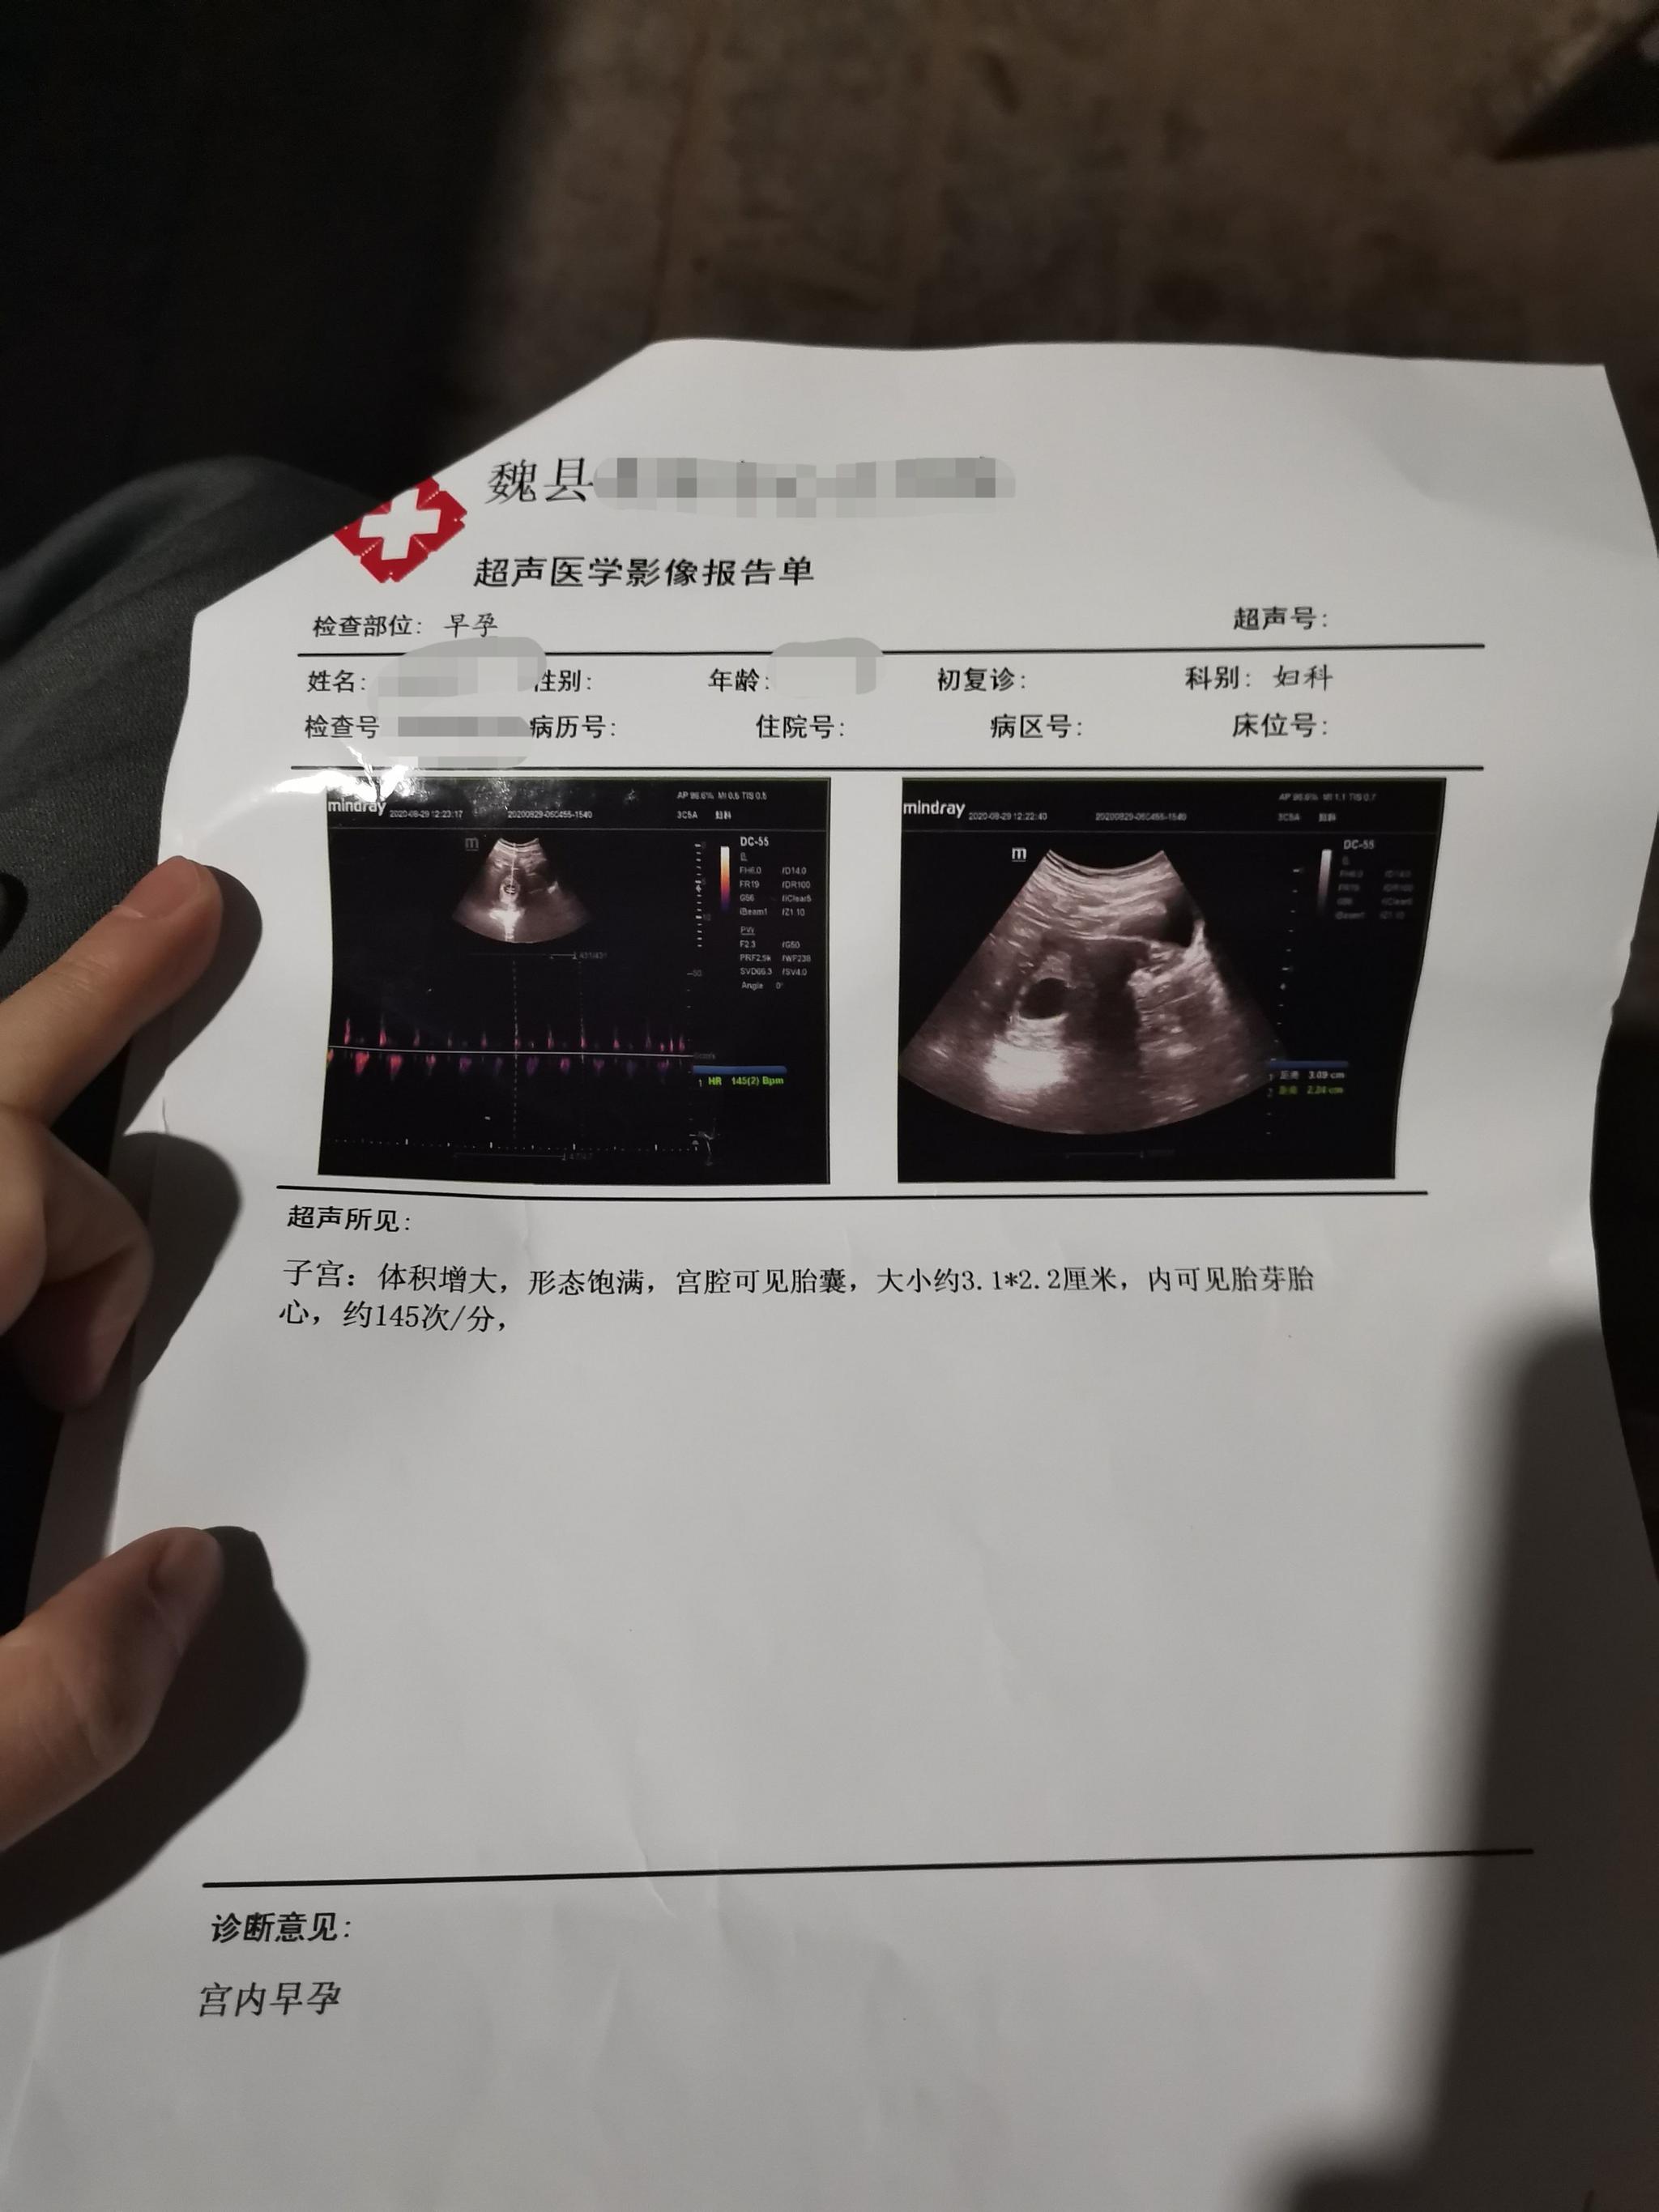 晓雨怀孕的影像报告单。受访者供图